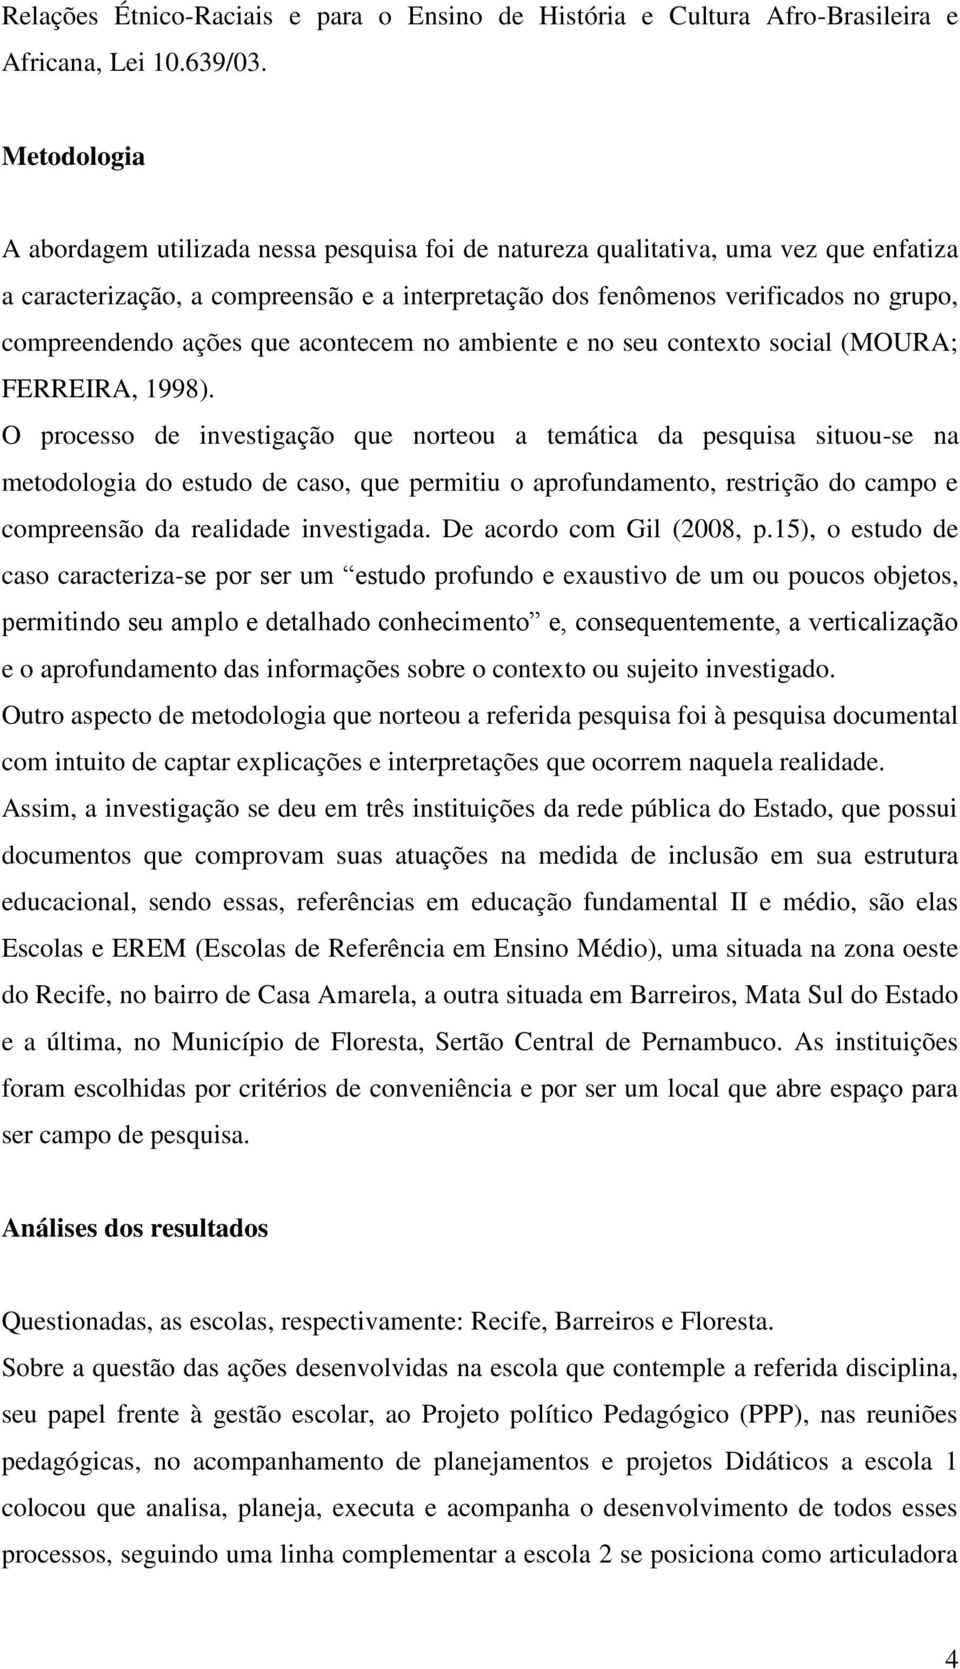 ações que acontecem no ambiente e no seu contexto social (MOURA; FERREIRA, 1998).